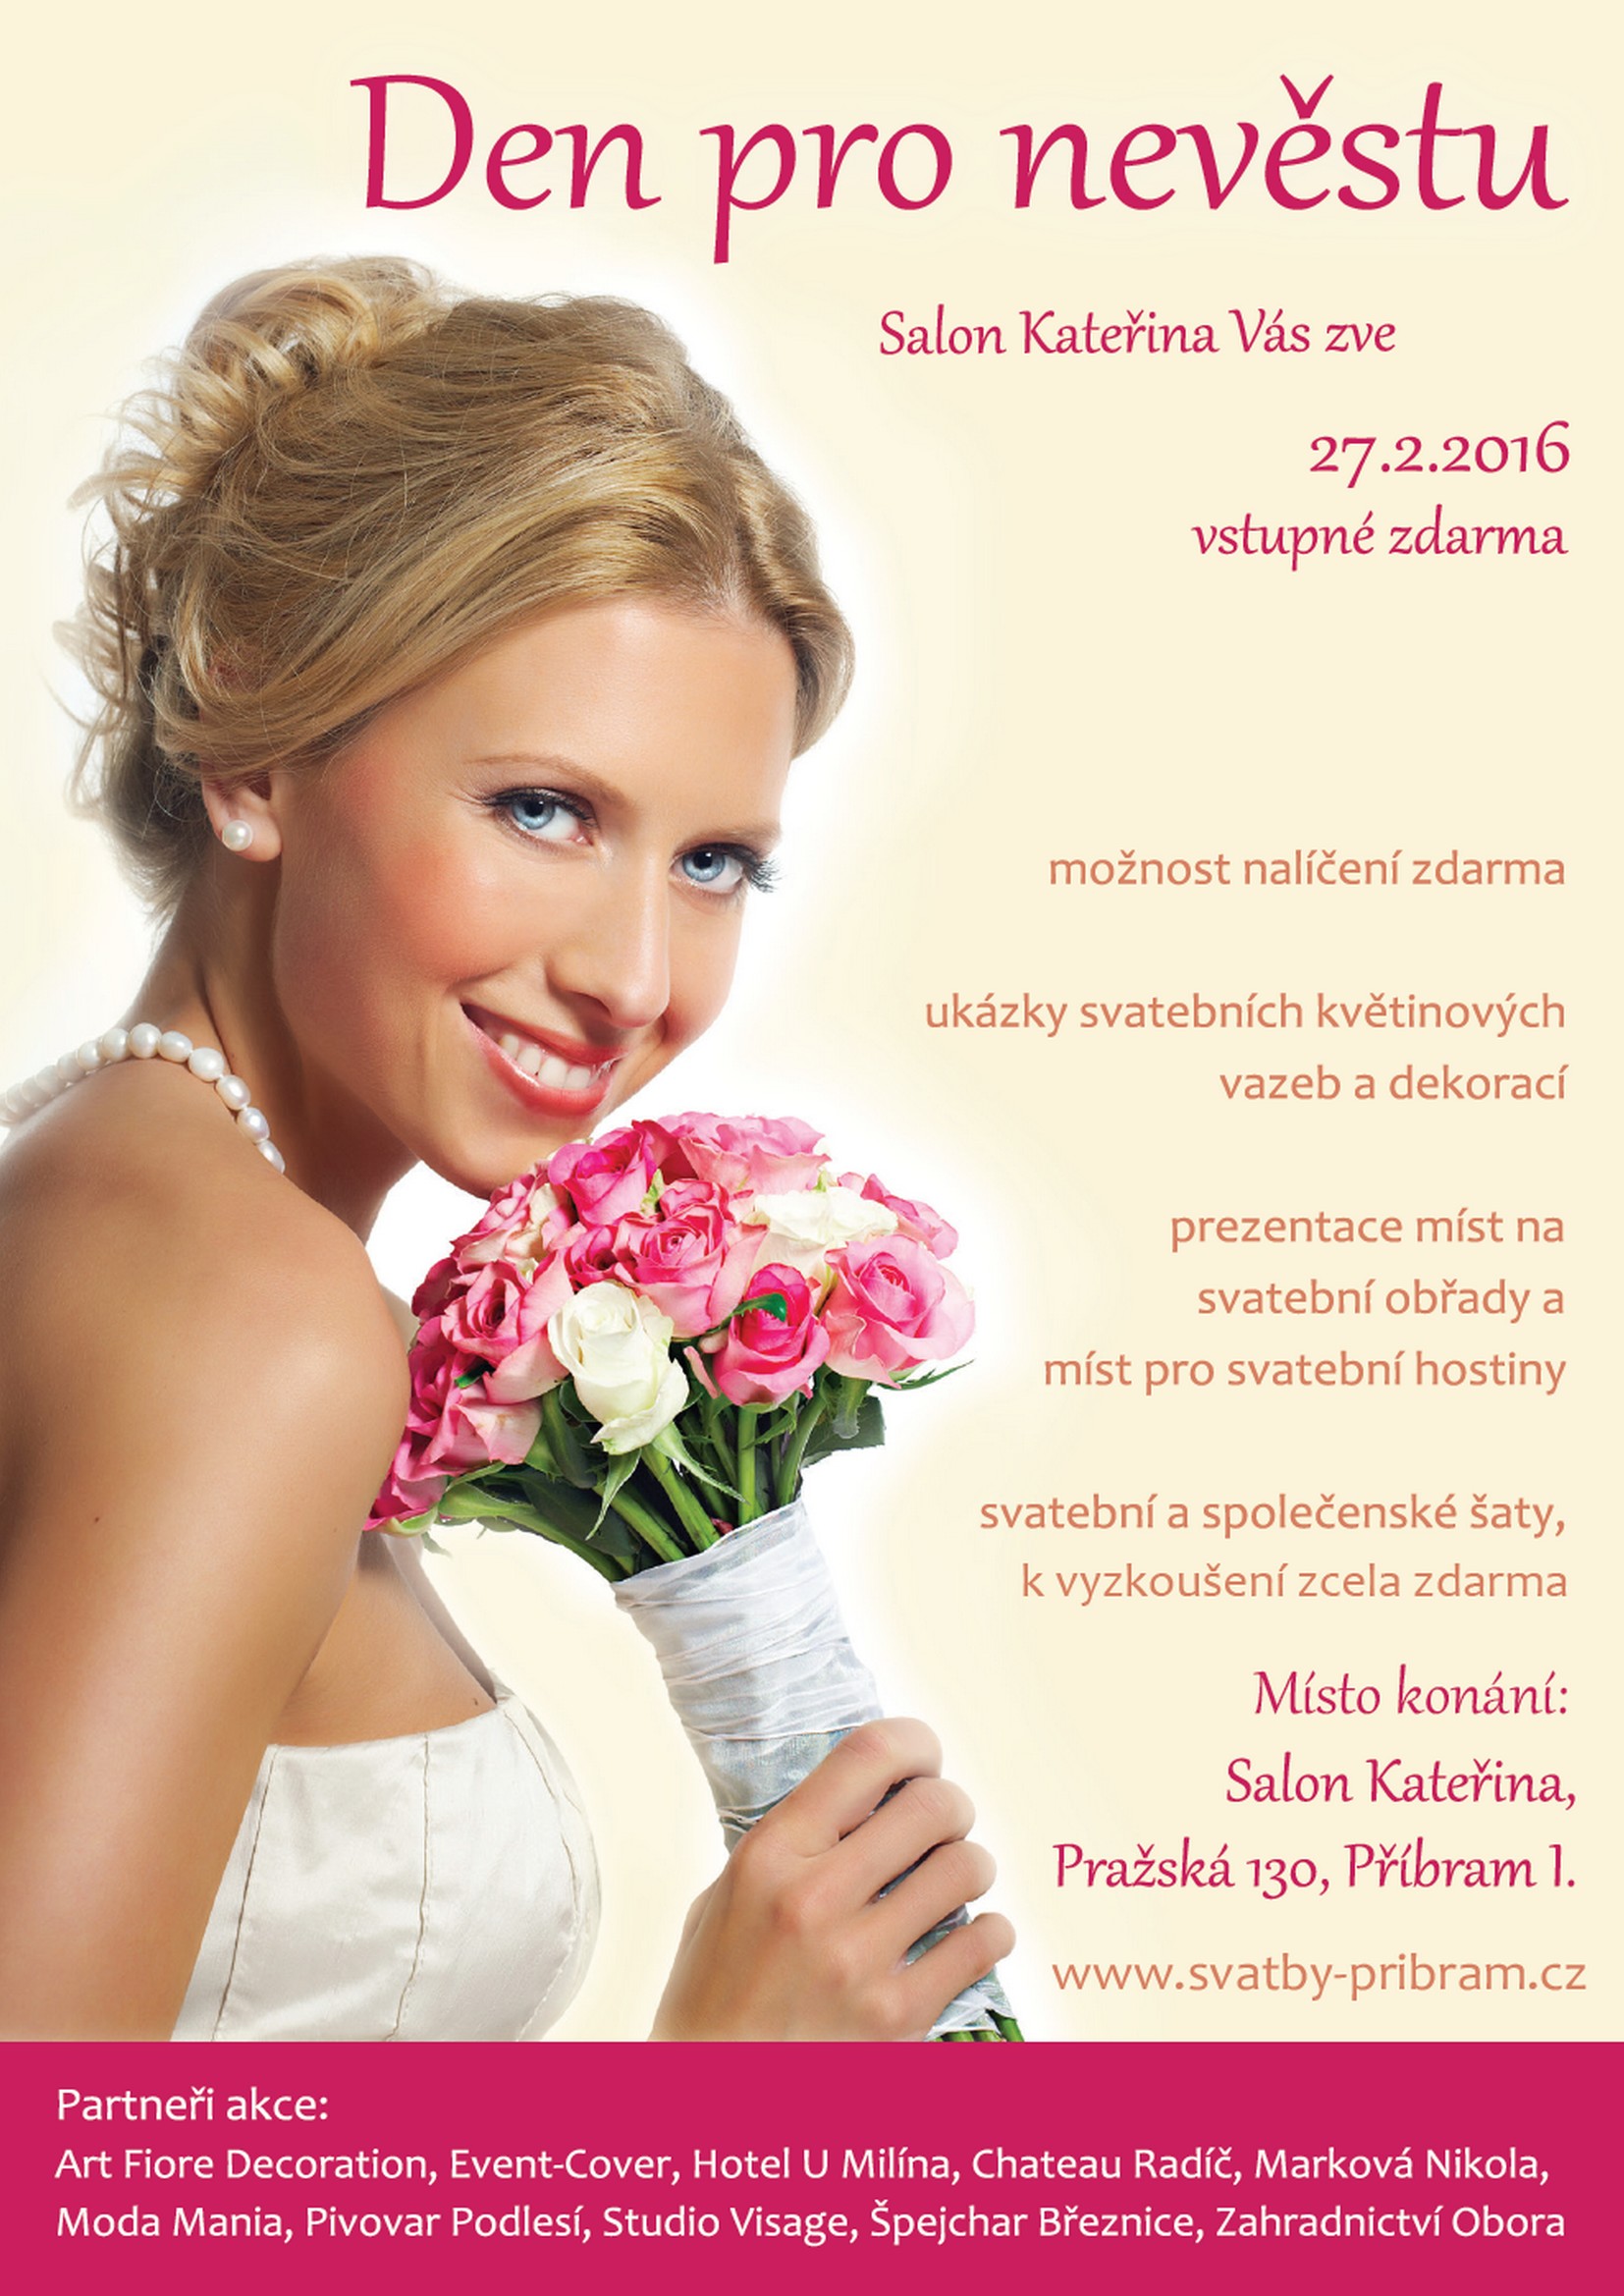 Event-Cover na příbramském svatebním veletrhu